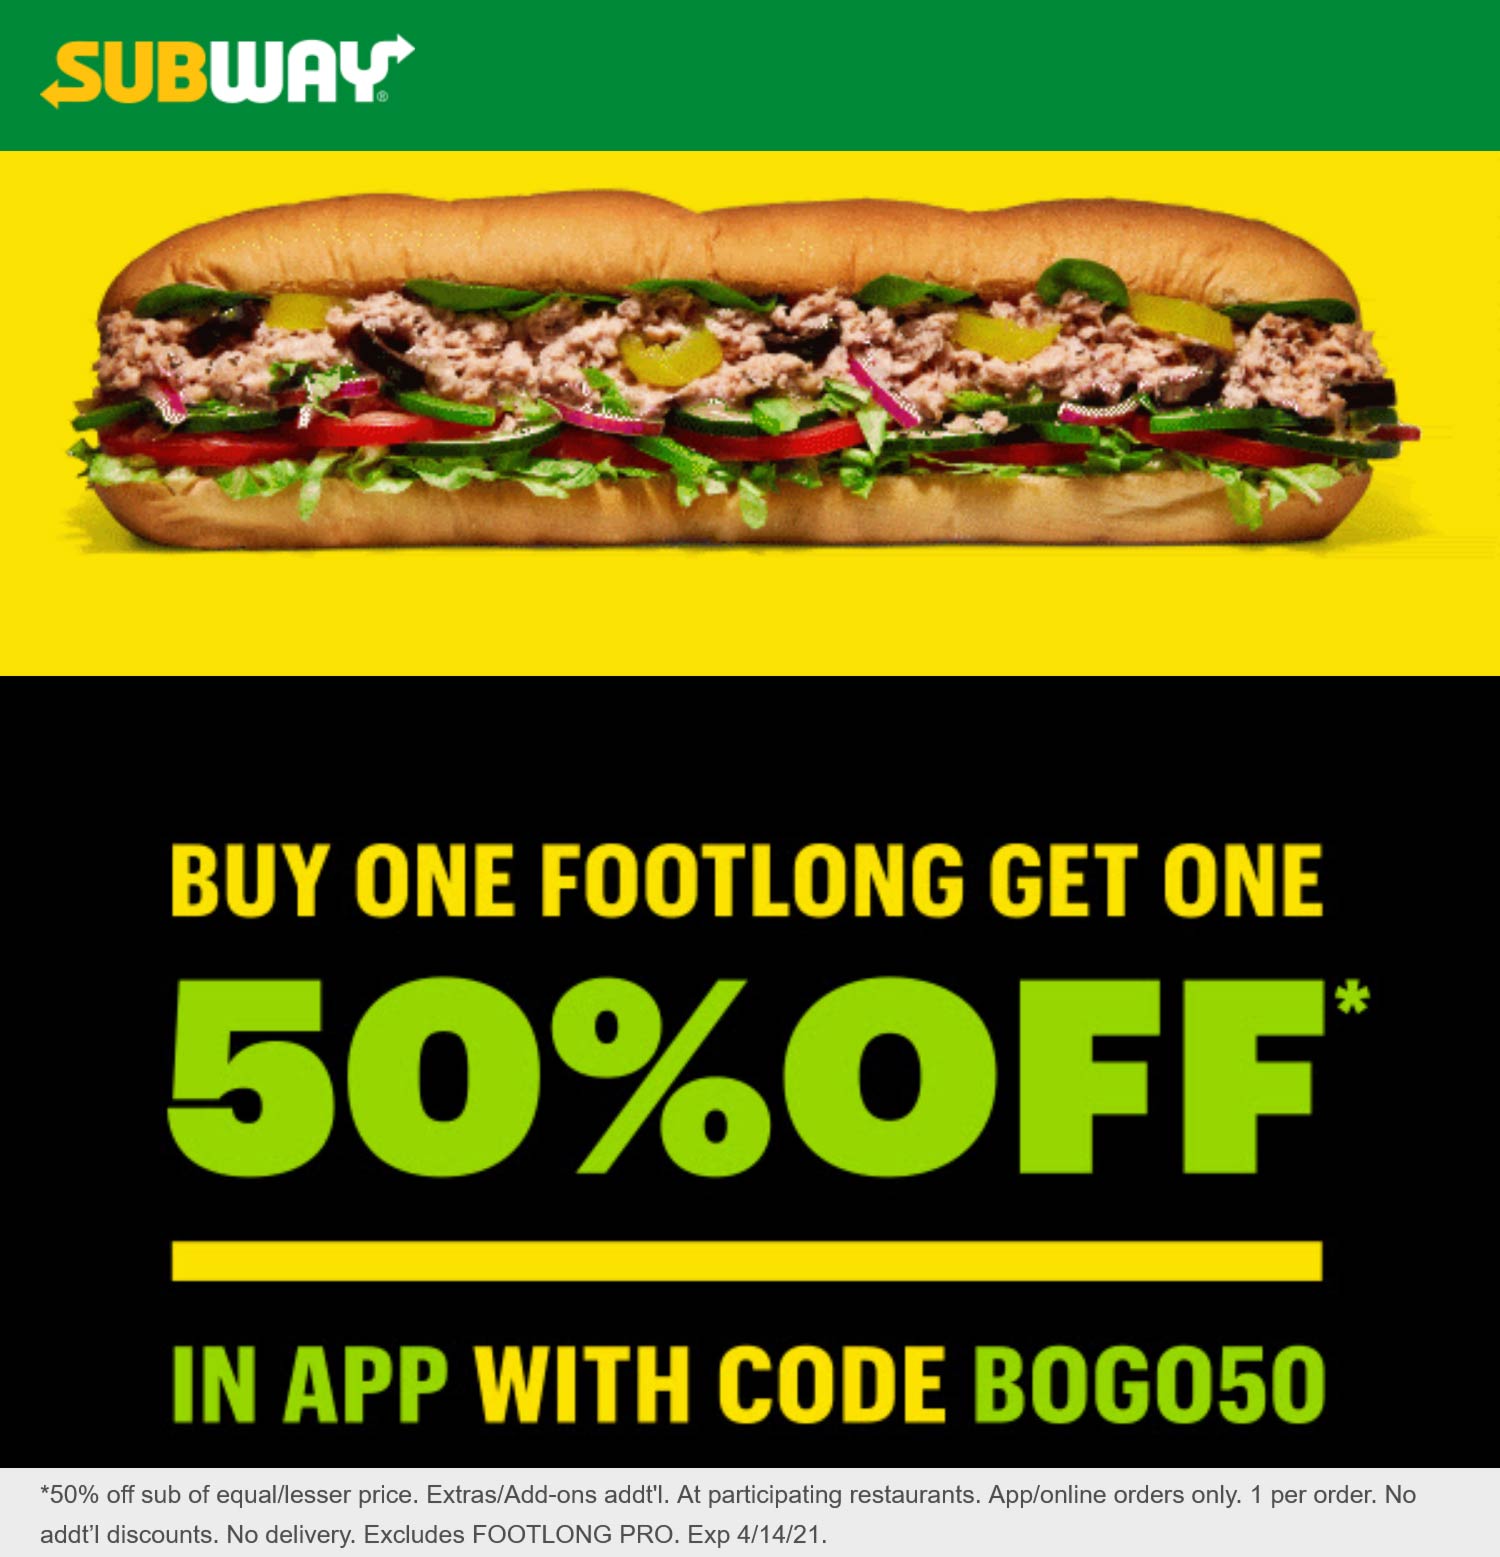 Subway restaurants Coupon  50% off second footlong sandwich at Subway via promo code BOGO50 #subway 